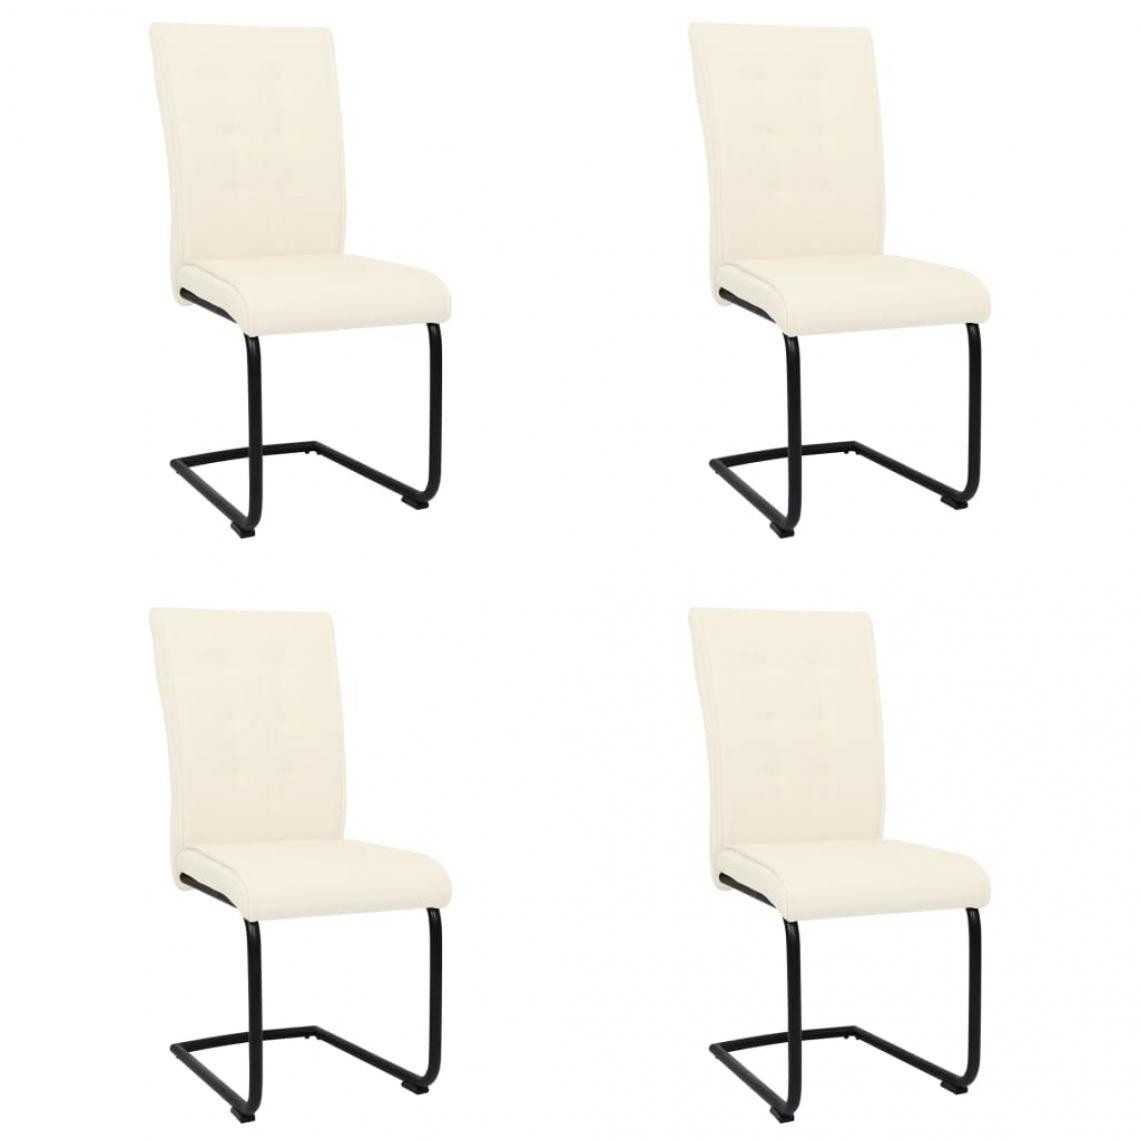 Decoshop26 - Lot de 4 chaises de salle à manger cuisine cantilever design moderne tissu crème CDS021361 - Chaises